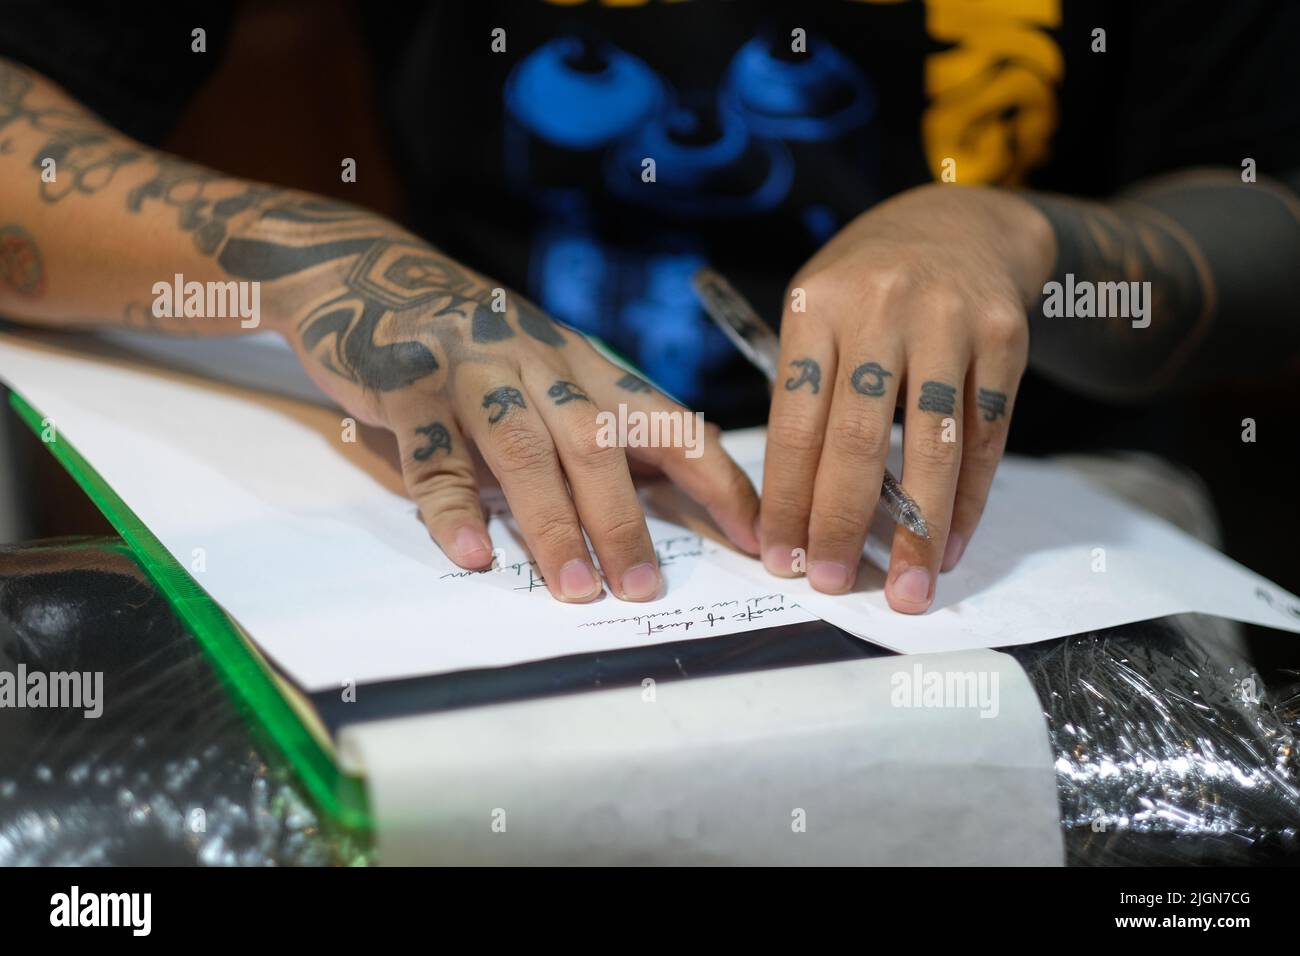 Gros plan sur les doigts incrustés du tatoueur pendant qu'il s'arrête tout en enchâlant un script cursif sur du papier blanc avec un stylo en préparation d'une session de tatouage. Banque D'Images